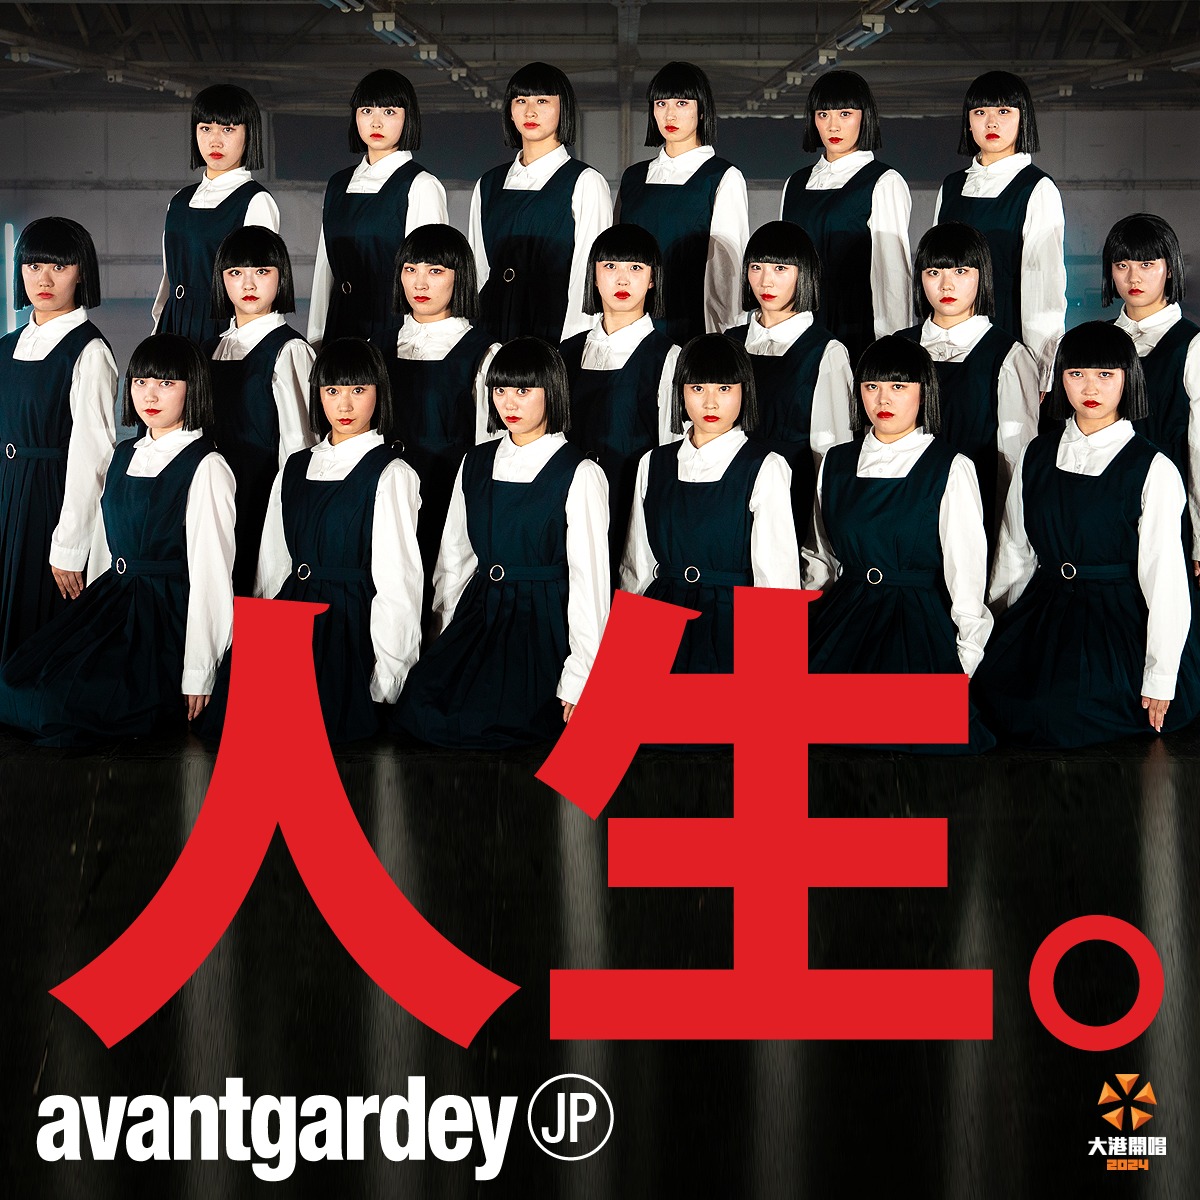 日本舞團avantgardey。（圖片來源：出日音樂）